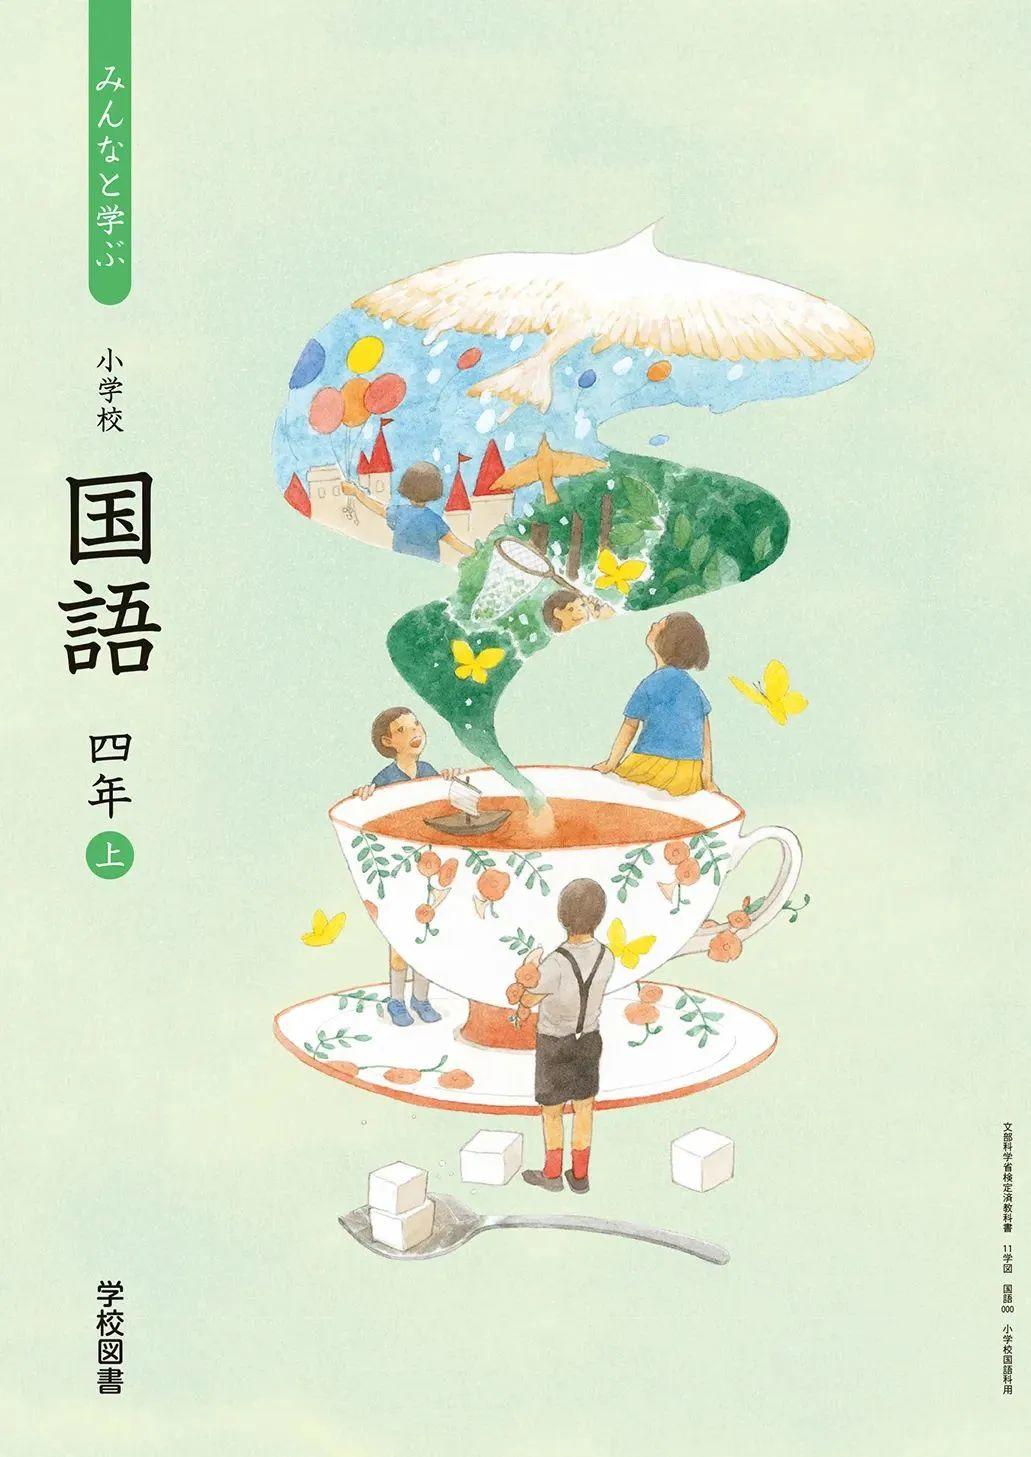 日本中小学生教科书封面设计,太美了吧! 第10张